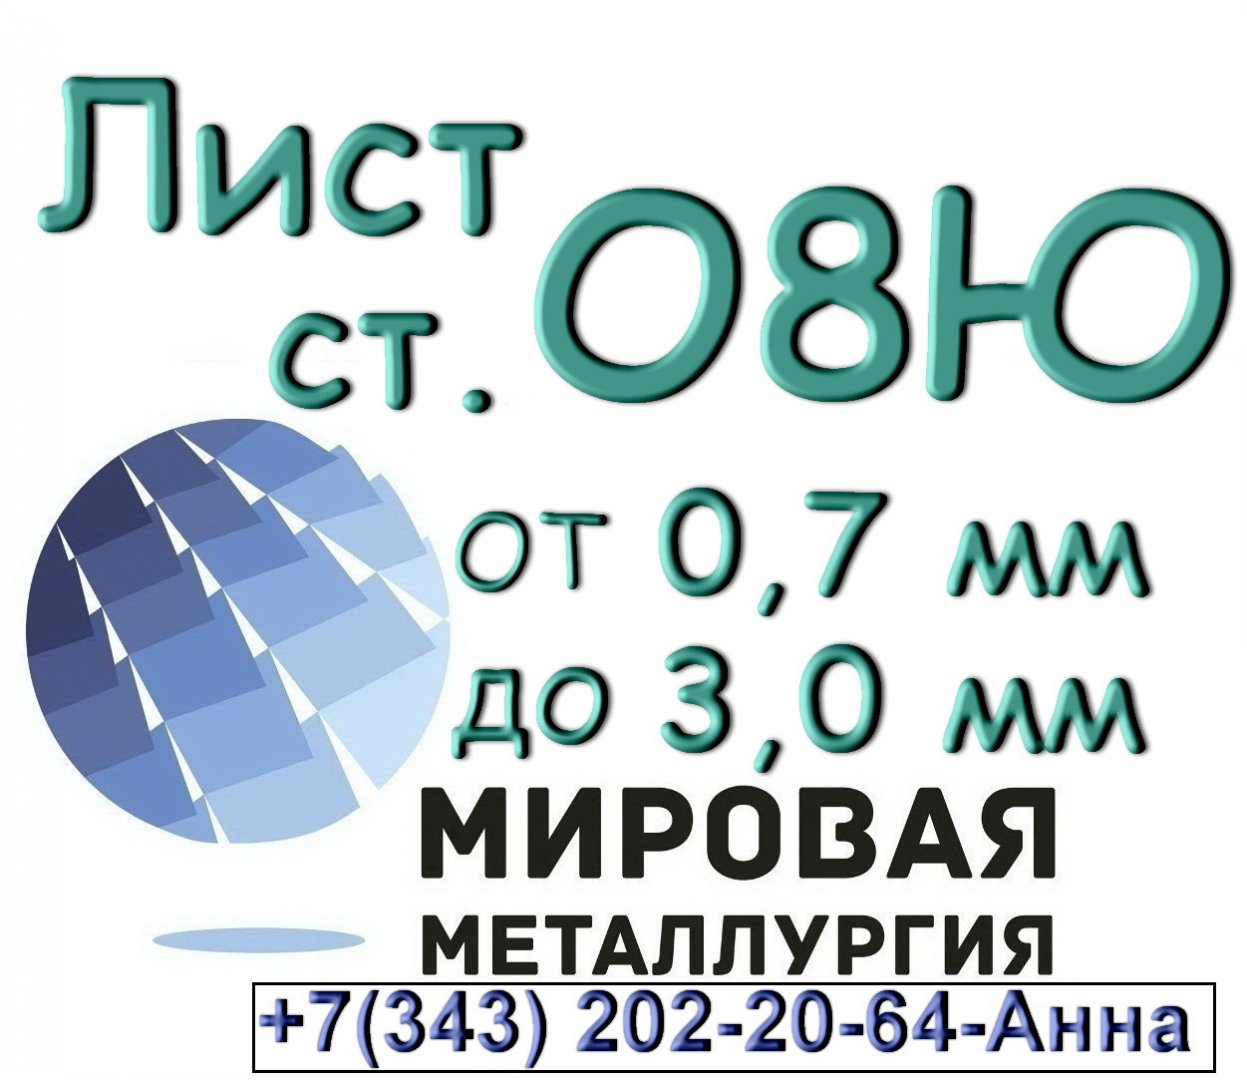 Продам металлопрокат в Красноярском районе, из наличия холоднокатаные стальные листы